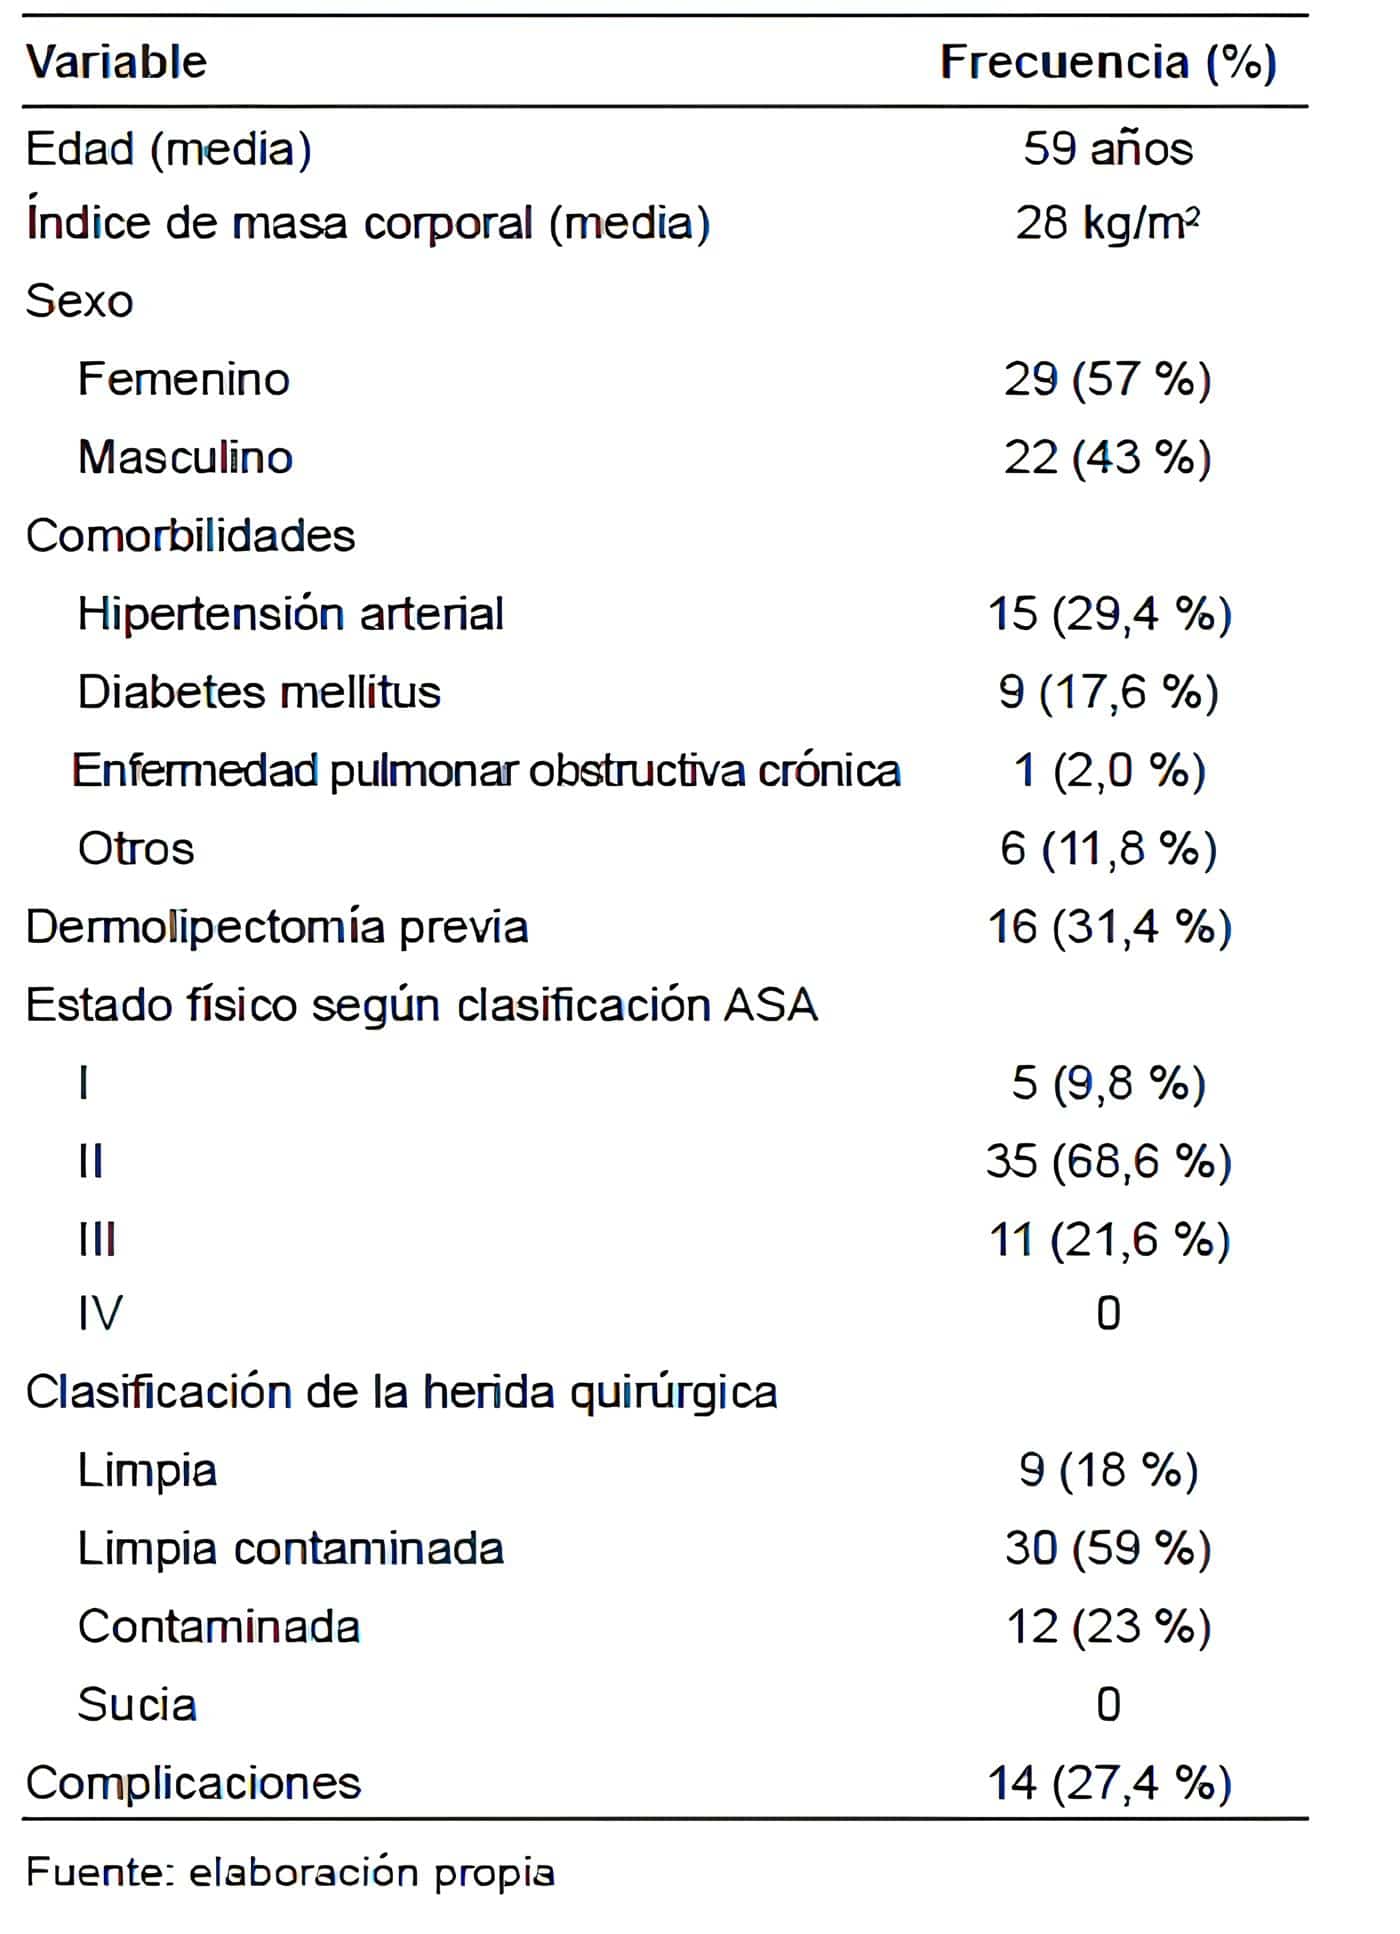 Características generales de los pacientes sometidos a herniorrafia lateral.